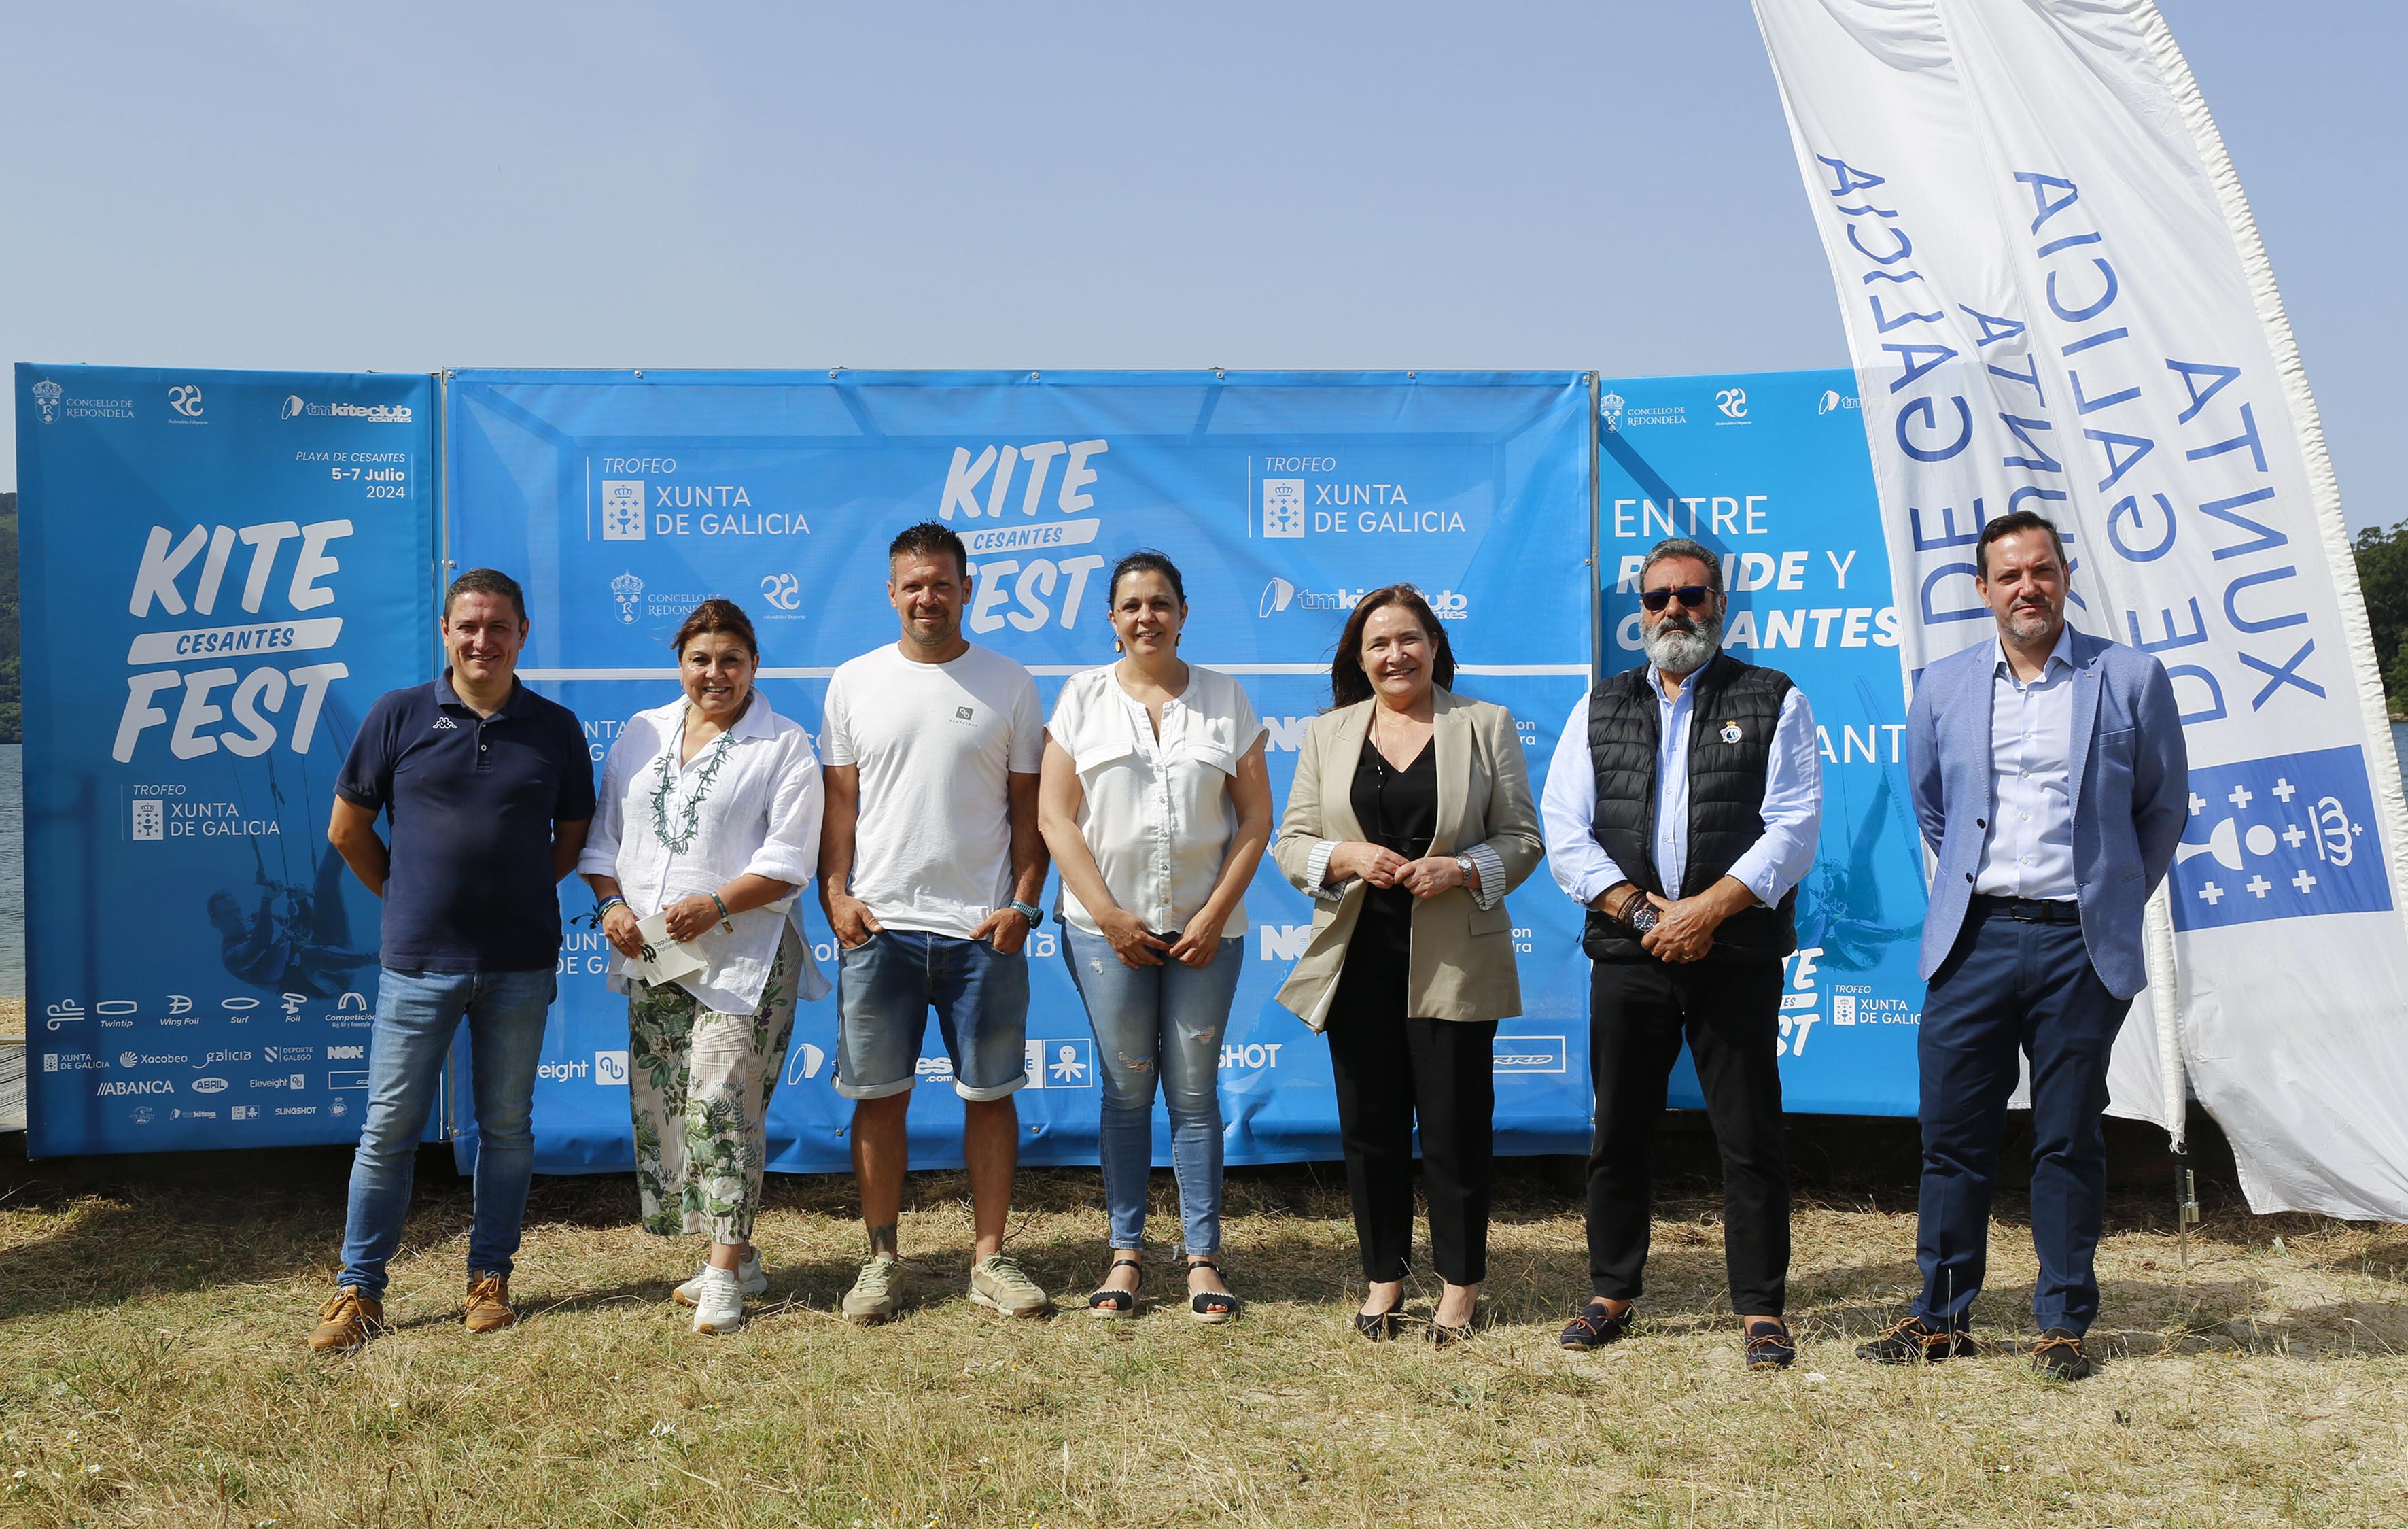 Image 2 of article A delegada da Xunta en Vigo aposta por consolidar o KiteFest de Cesantes como proba de referencia internacional do deporte náutico